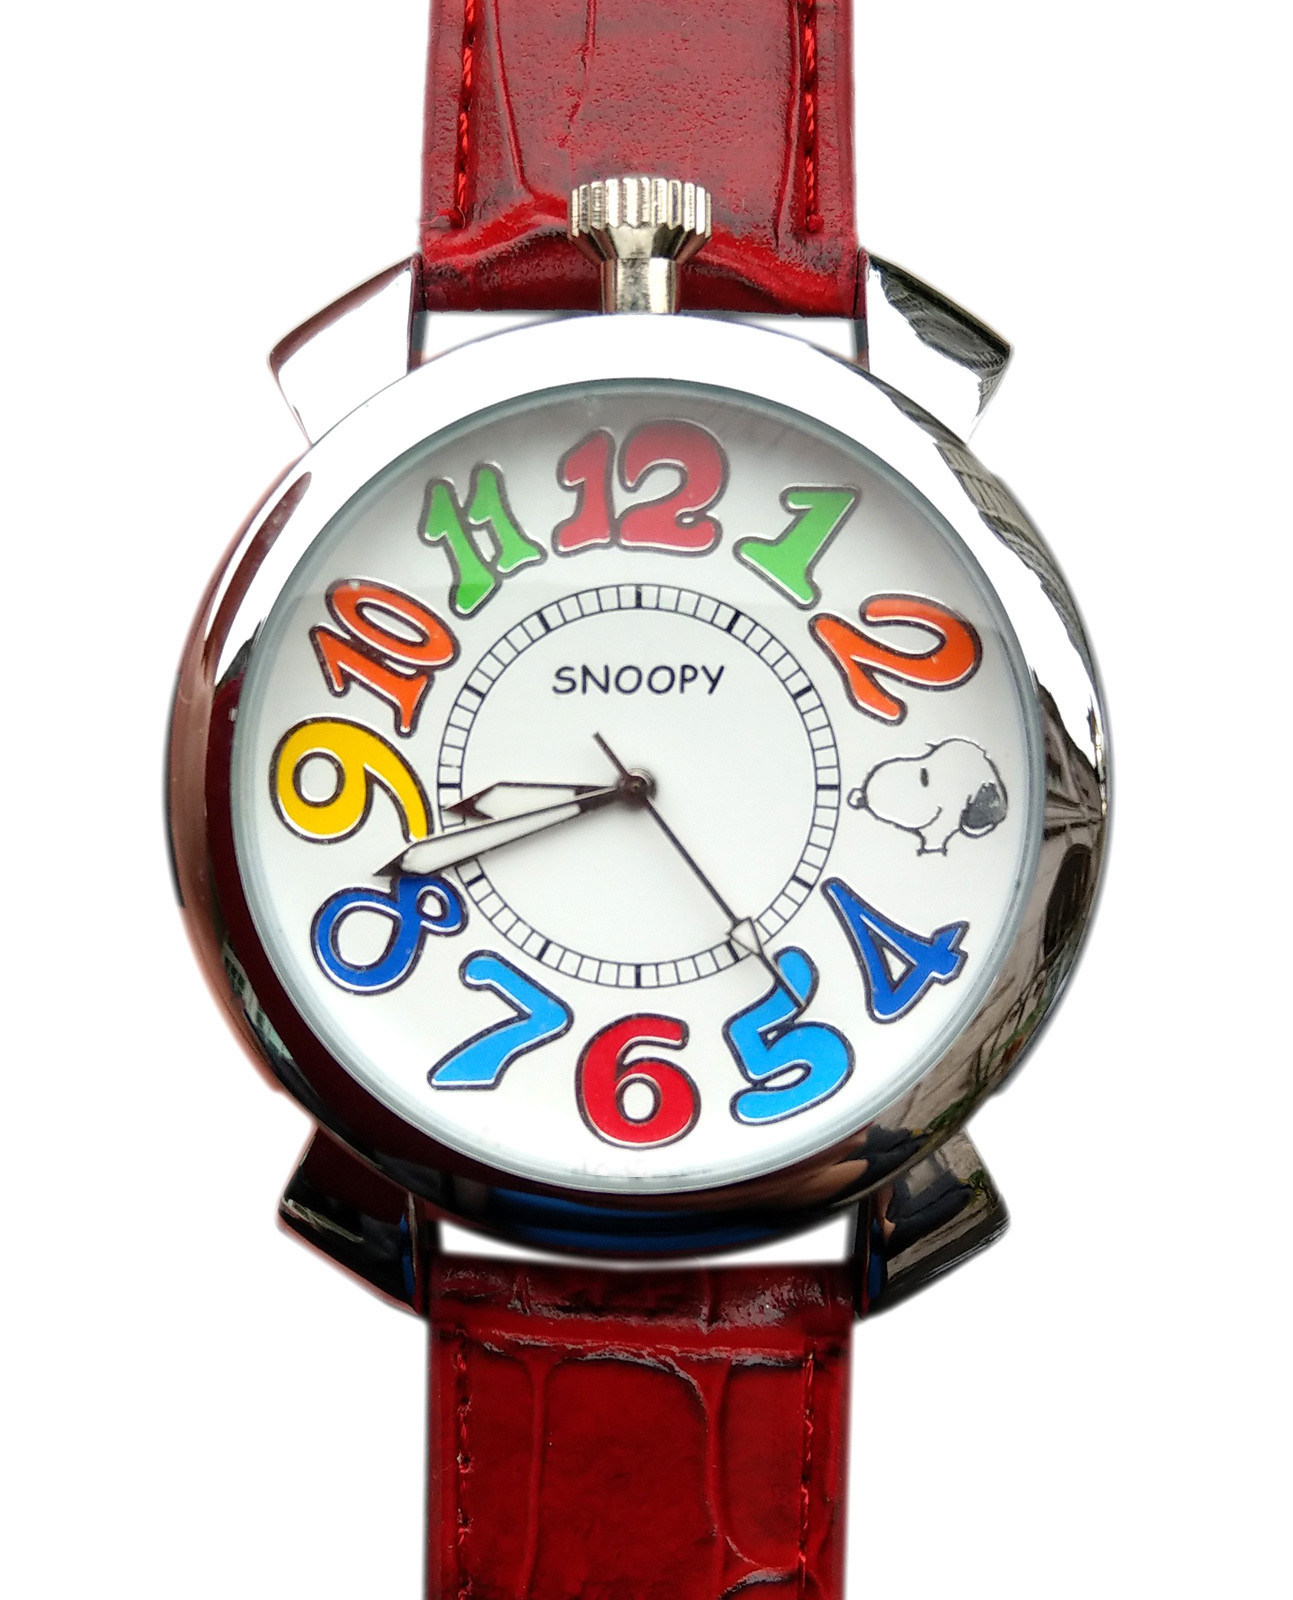 Reloj con banda de piel sintética roja Snoopy con números de esfera coloridos (35 mm) --700387151608-0